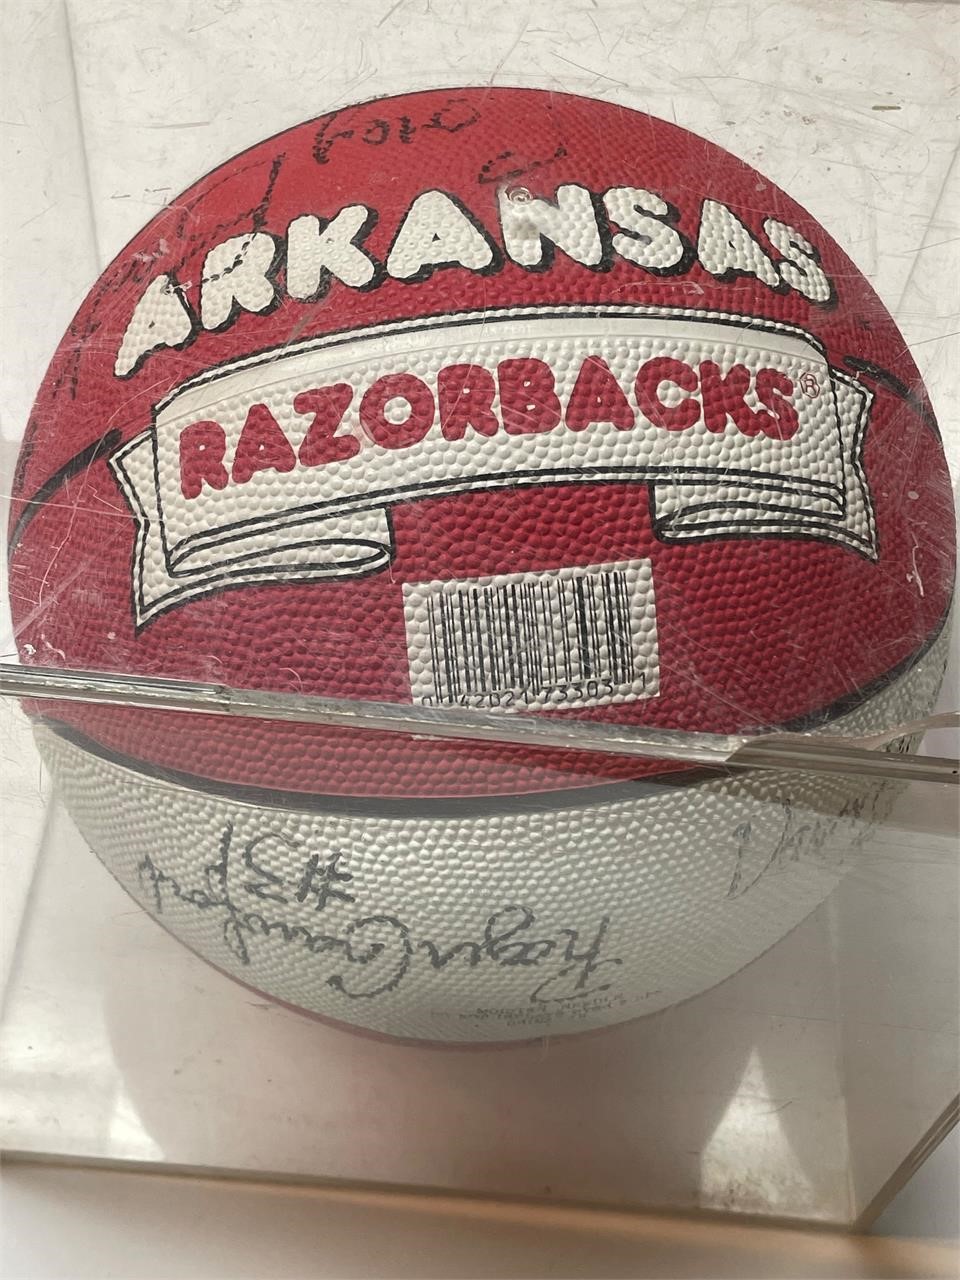 1993-94 Signed Razorback Basketball